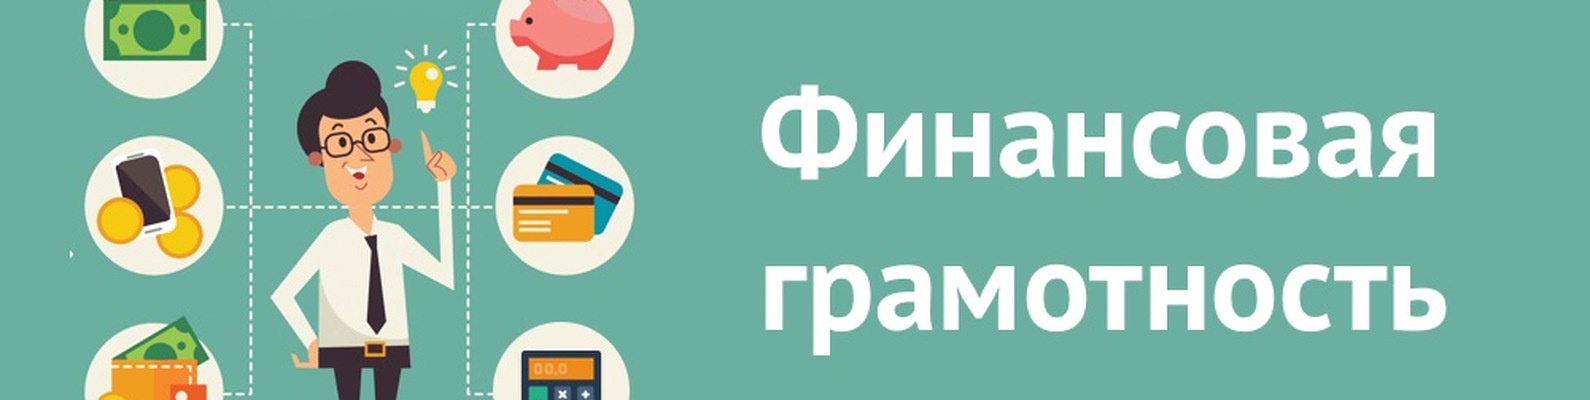 В Подмосковье начался Фестиваль финансовой грамотности